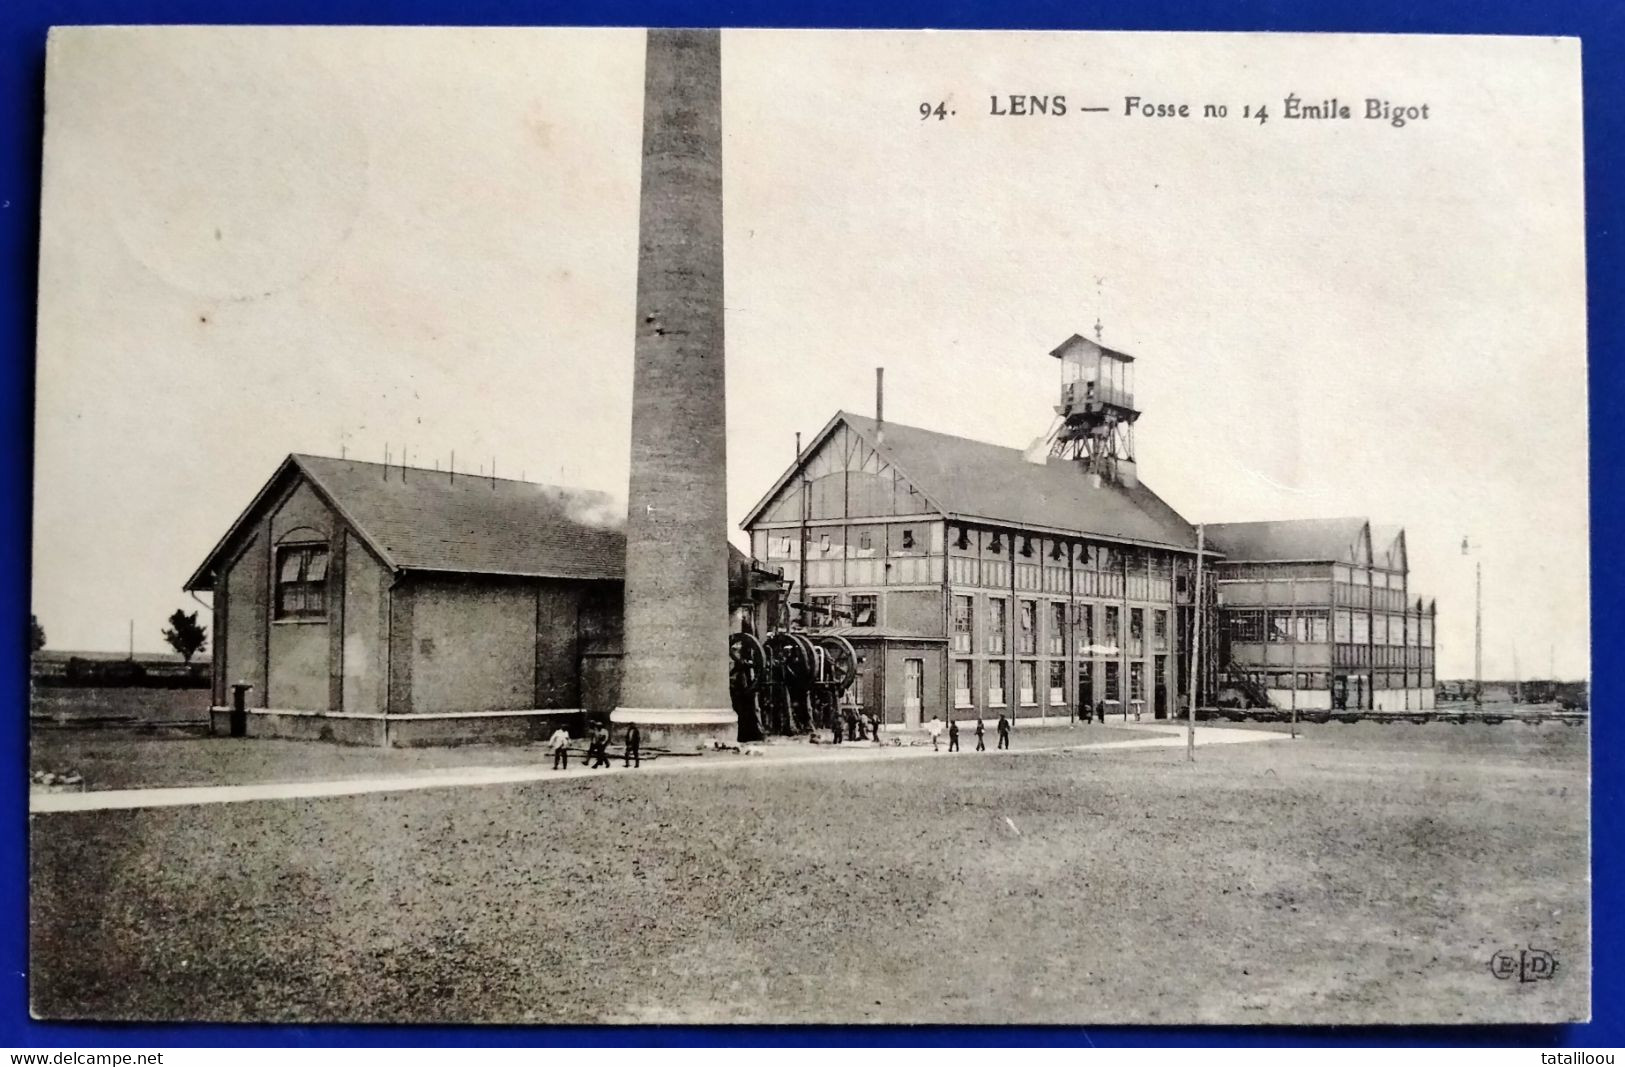 Carte Postale Ancienne - LENS - Fosse N°14  Emile Bigot - Mineral